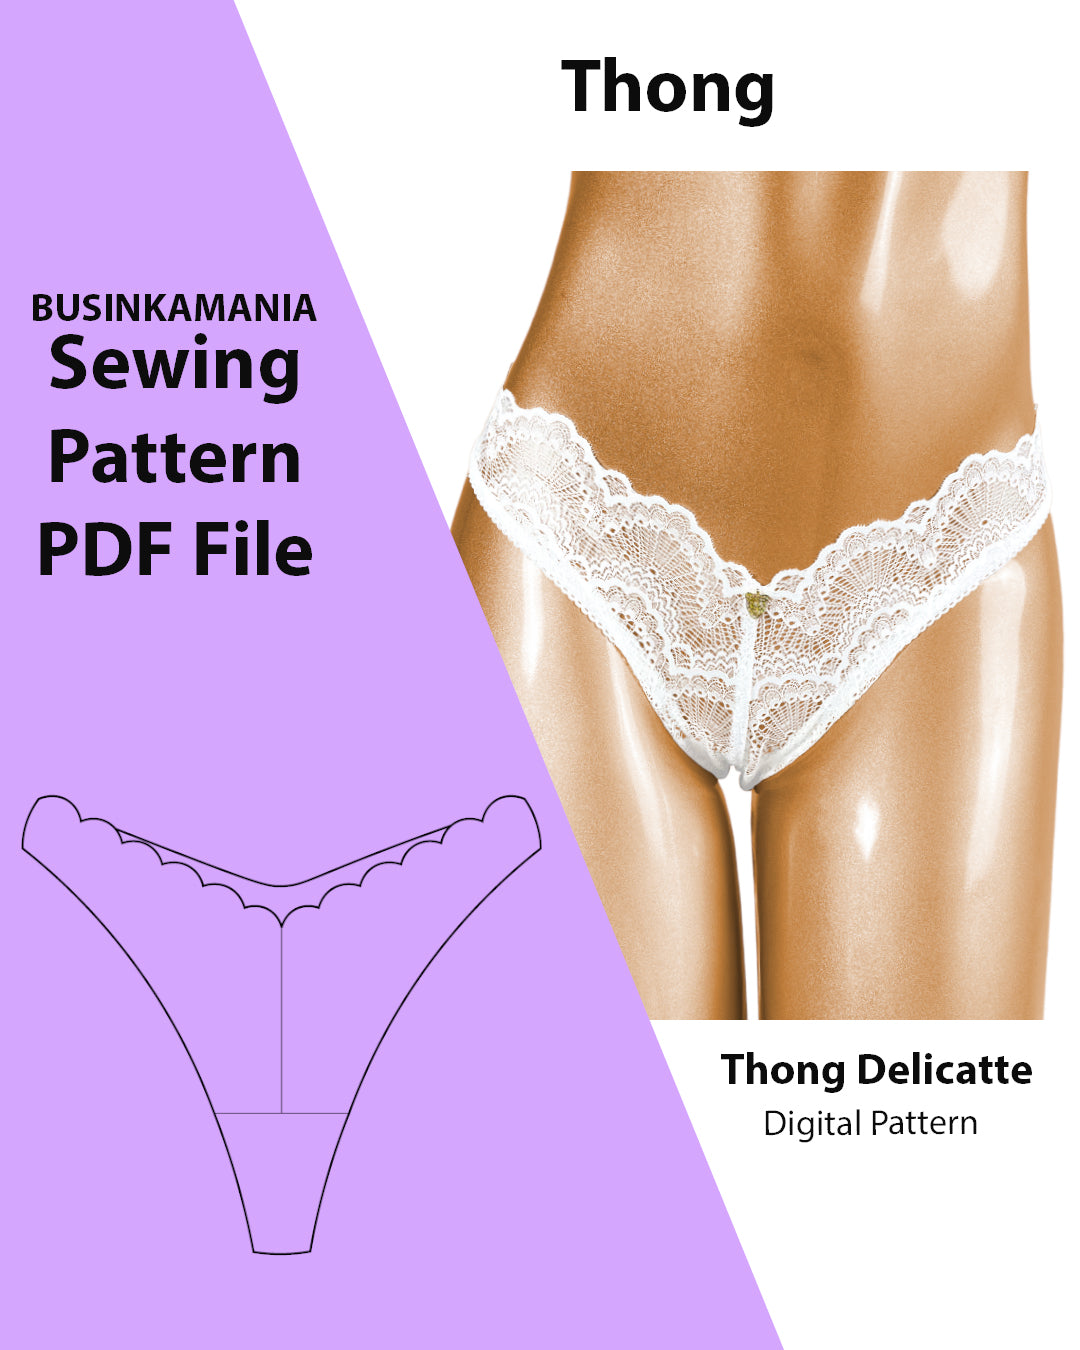 Thong Delicatte Lingerie Sewing Pattern - Cousez votre chemin vers un string luxueux avec ce patron de couture personnalisé - Téléchargement instantané du fichier PDF